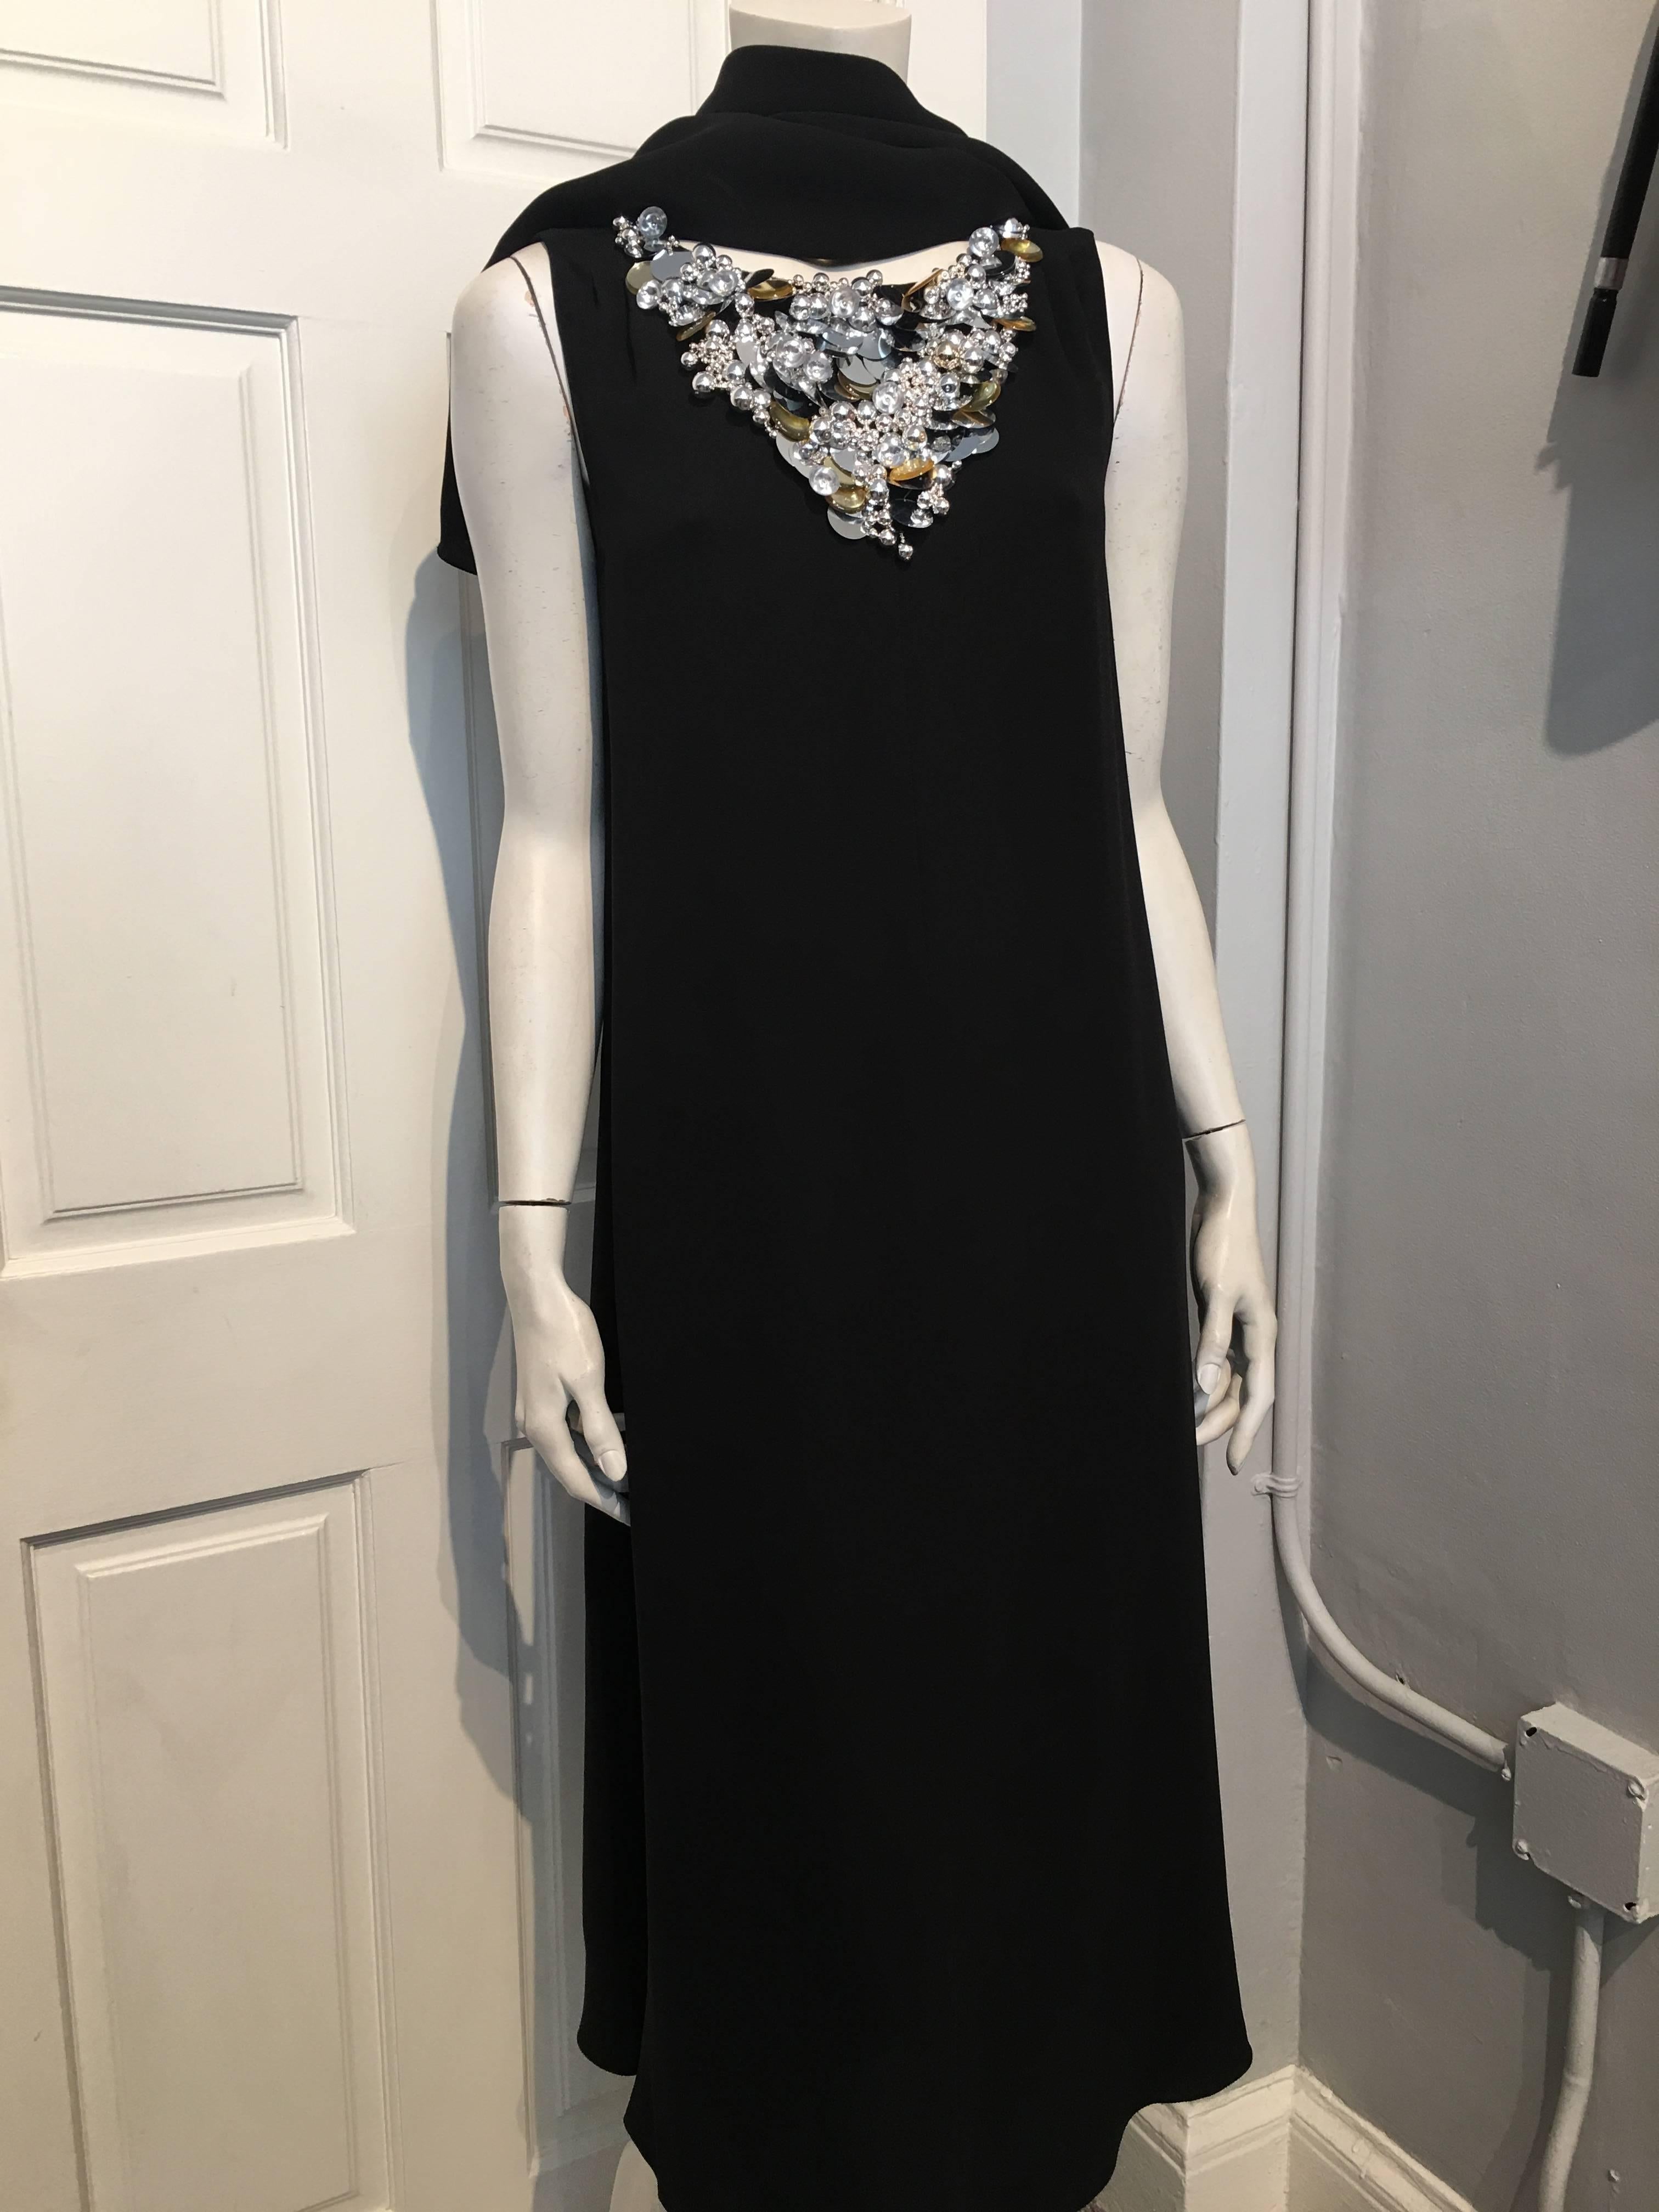 Chanel Embellished Black Cocktail Dress (Resort 2015) Sz 42 (Us 10) For Sale 1